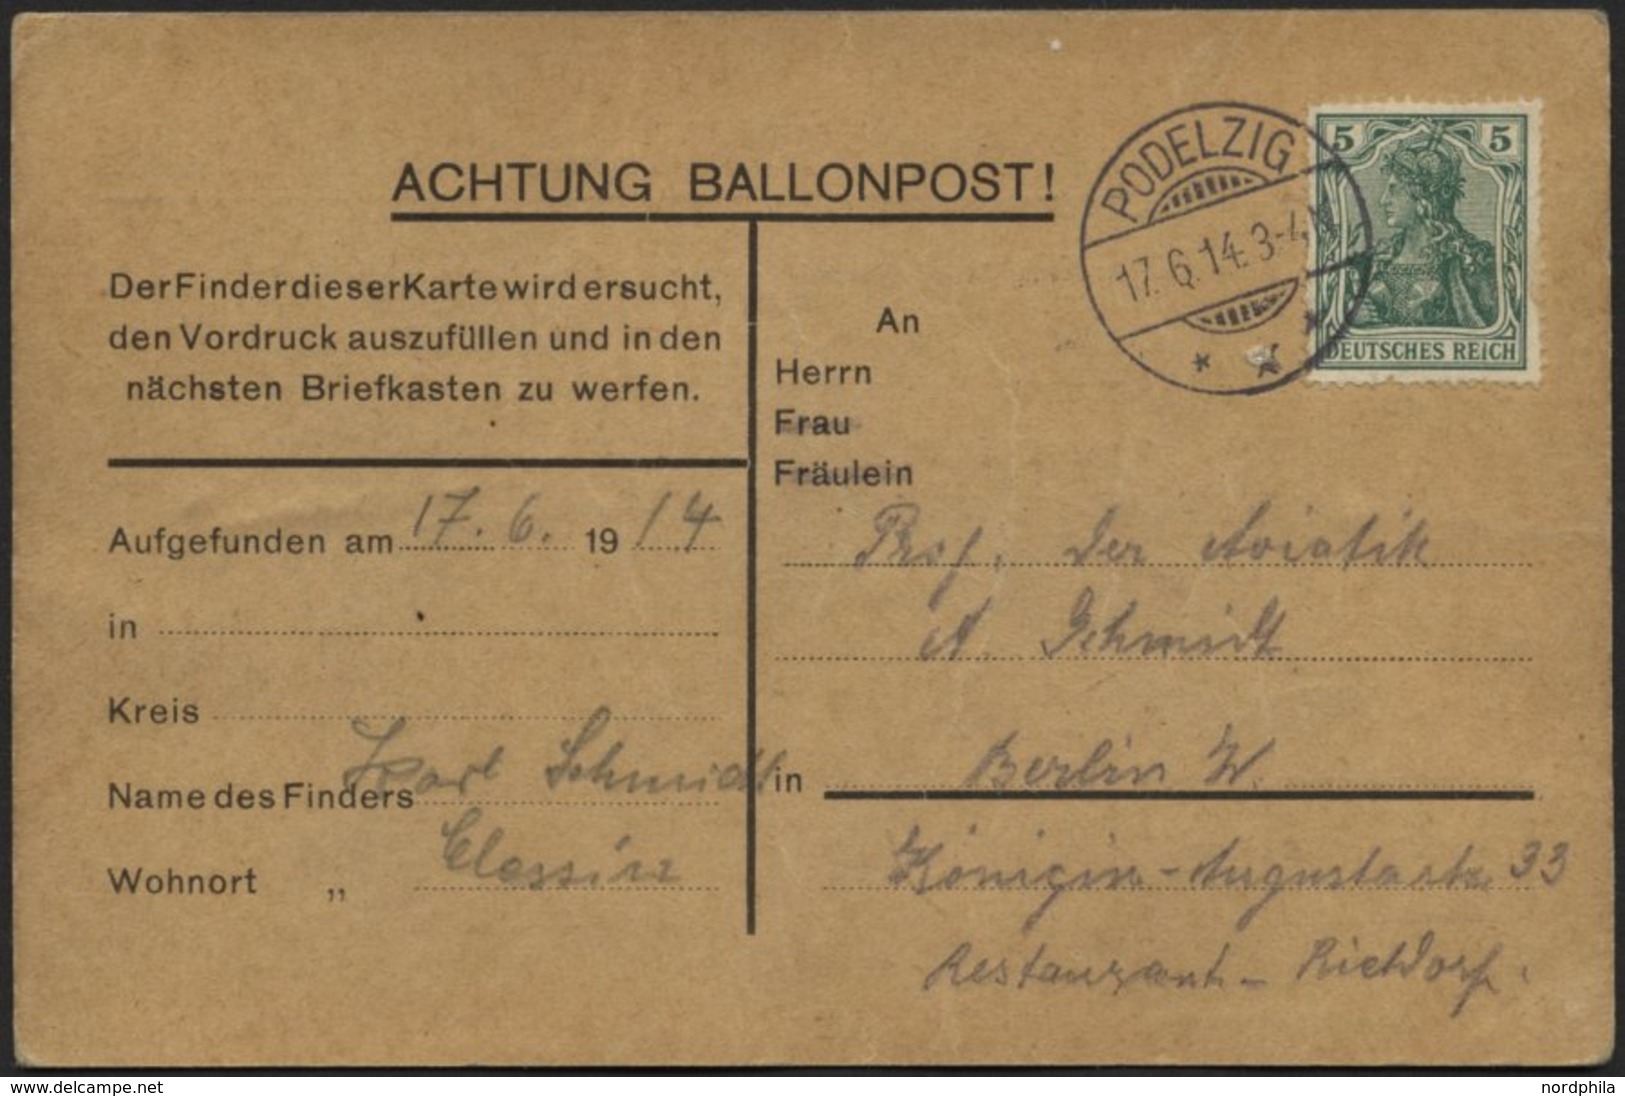 BALLON-FAHRTEN 1897-1916 17.6.1914, Berliner Verein Für Luftschiffahrt, Abwurf Vom Ballon LILIENTHAL Und Fundvermerk, Po - Airships